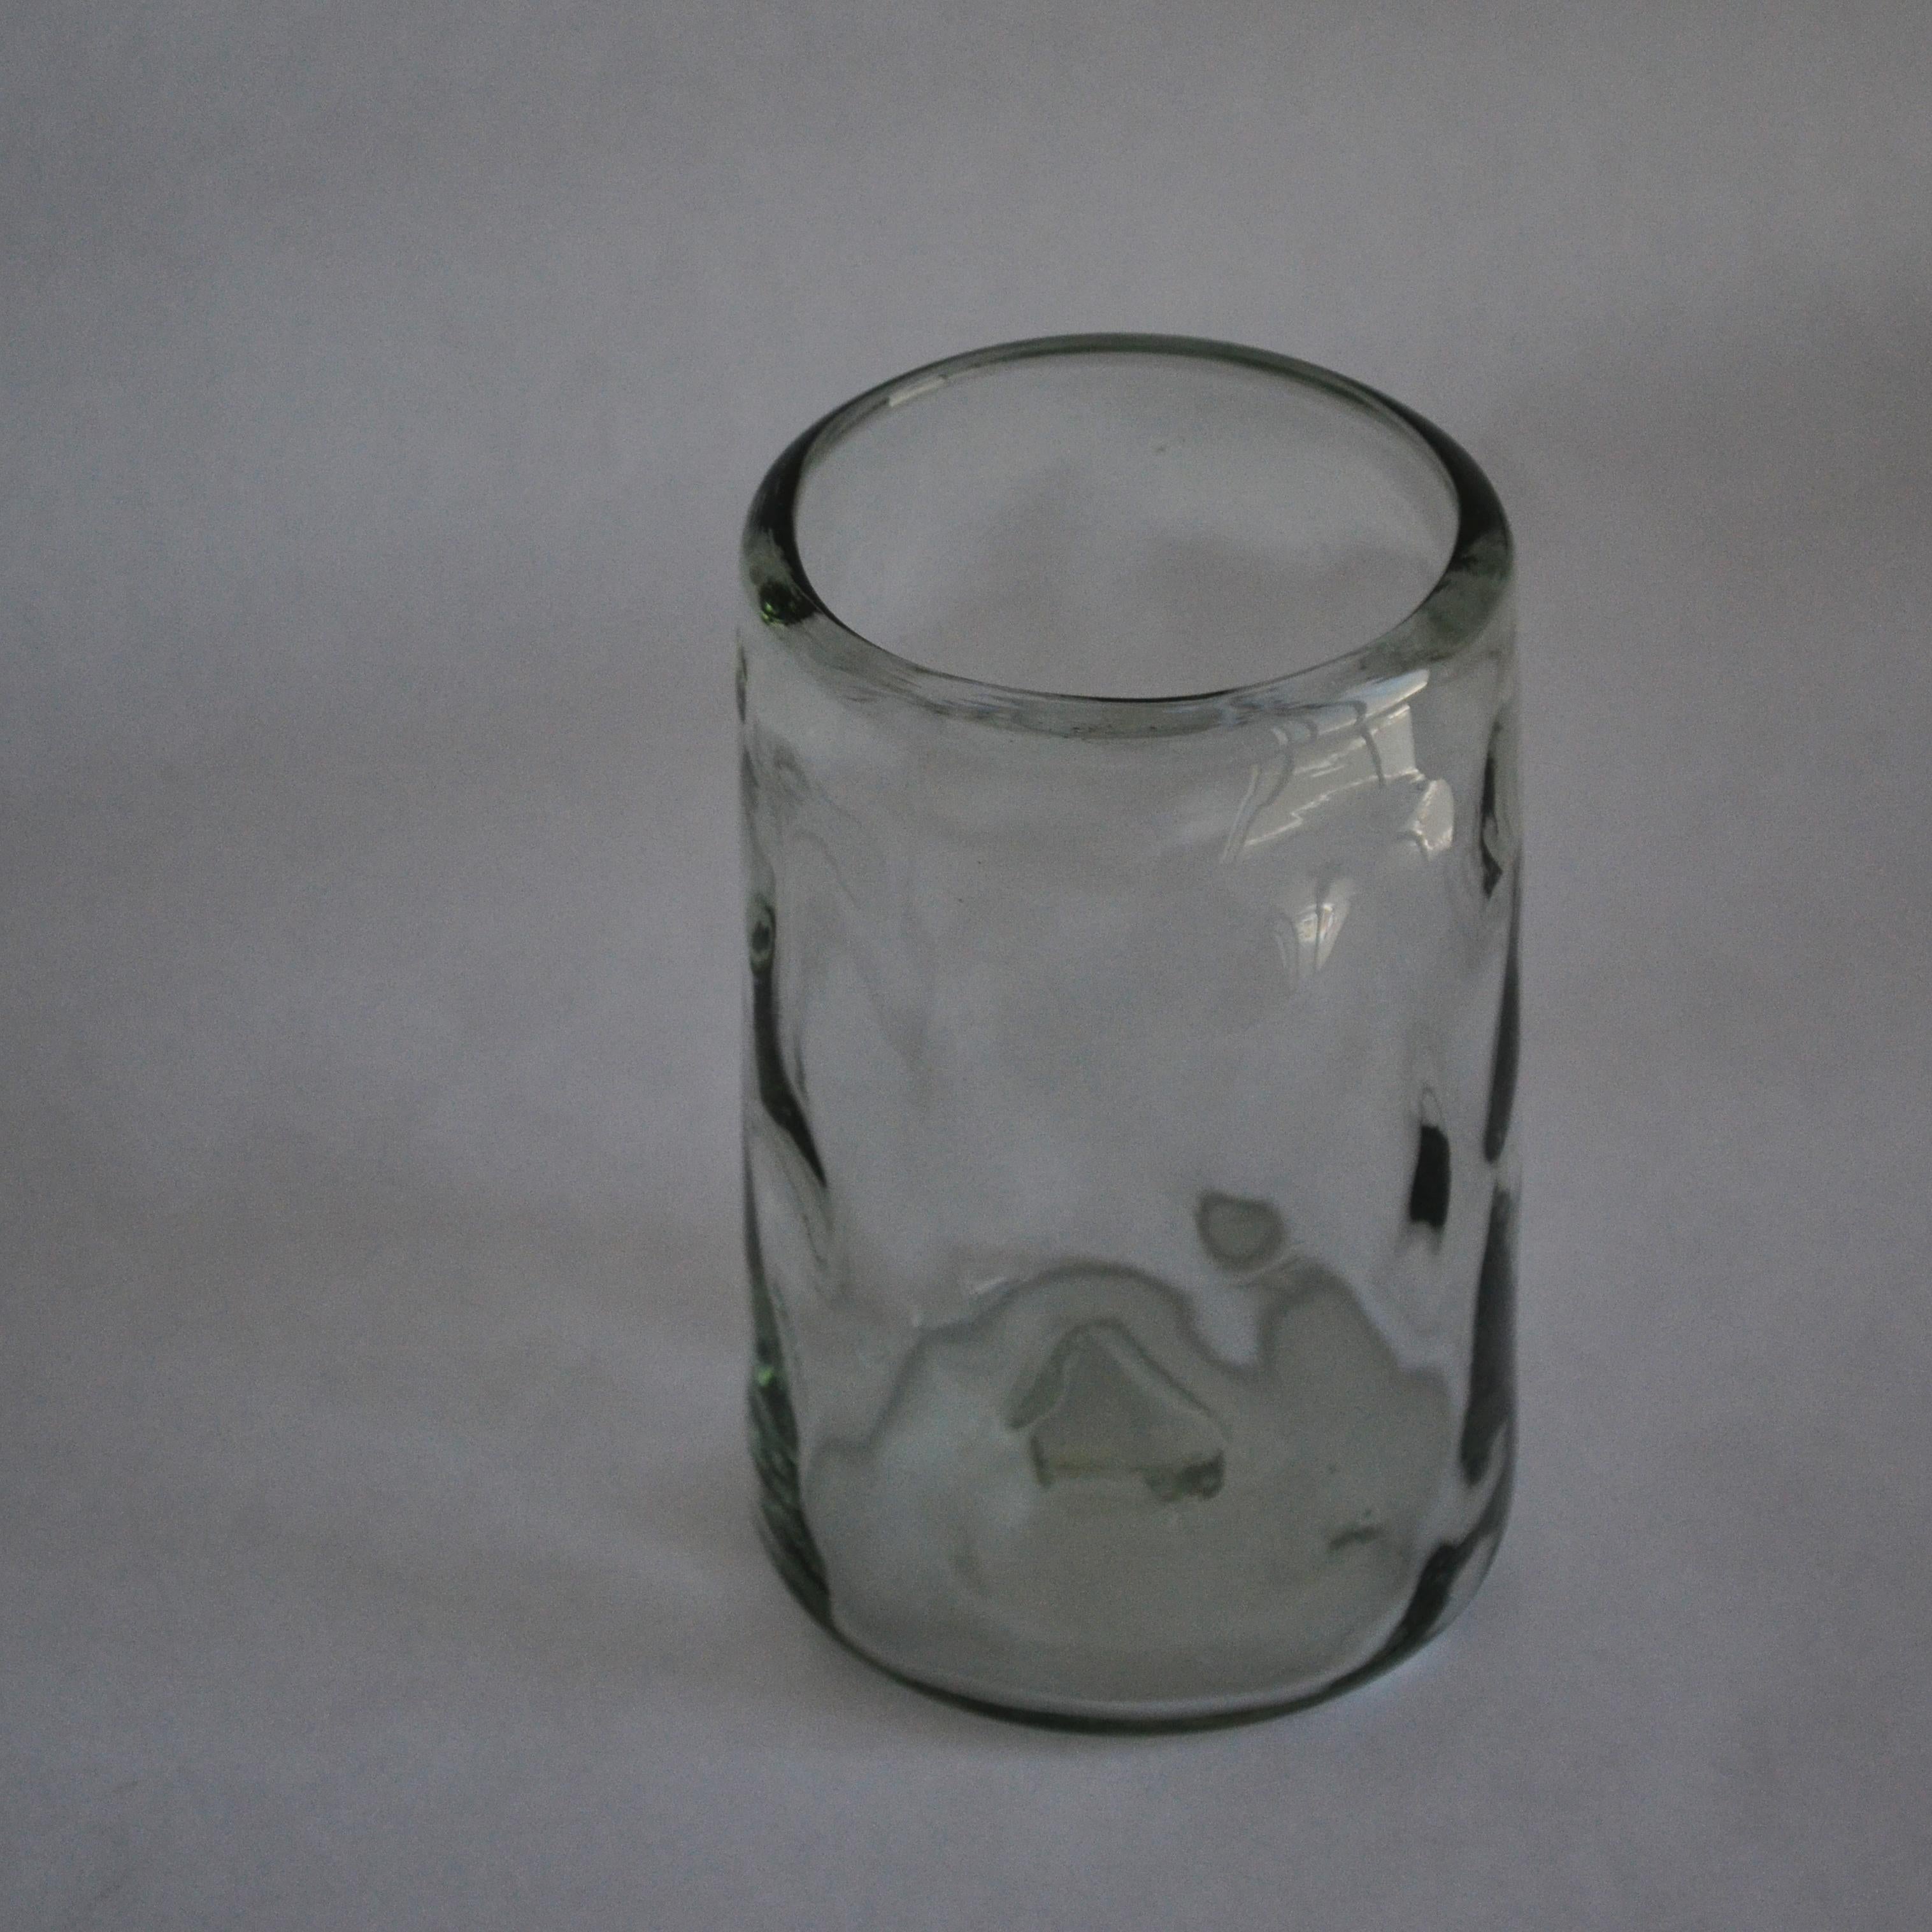 White Lights ist ein Set aus mundgeblasenen, transparenten Gläsern mit einer organischen Form, die von der natürlichen Oberfläche des Landes inspiriert ist.

Nightlights of Mexico City, eine Kollektion klassischer Brillen, inspiriert vom